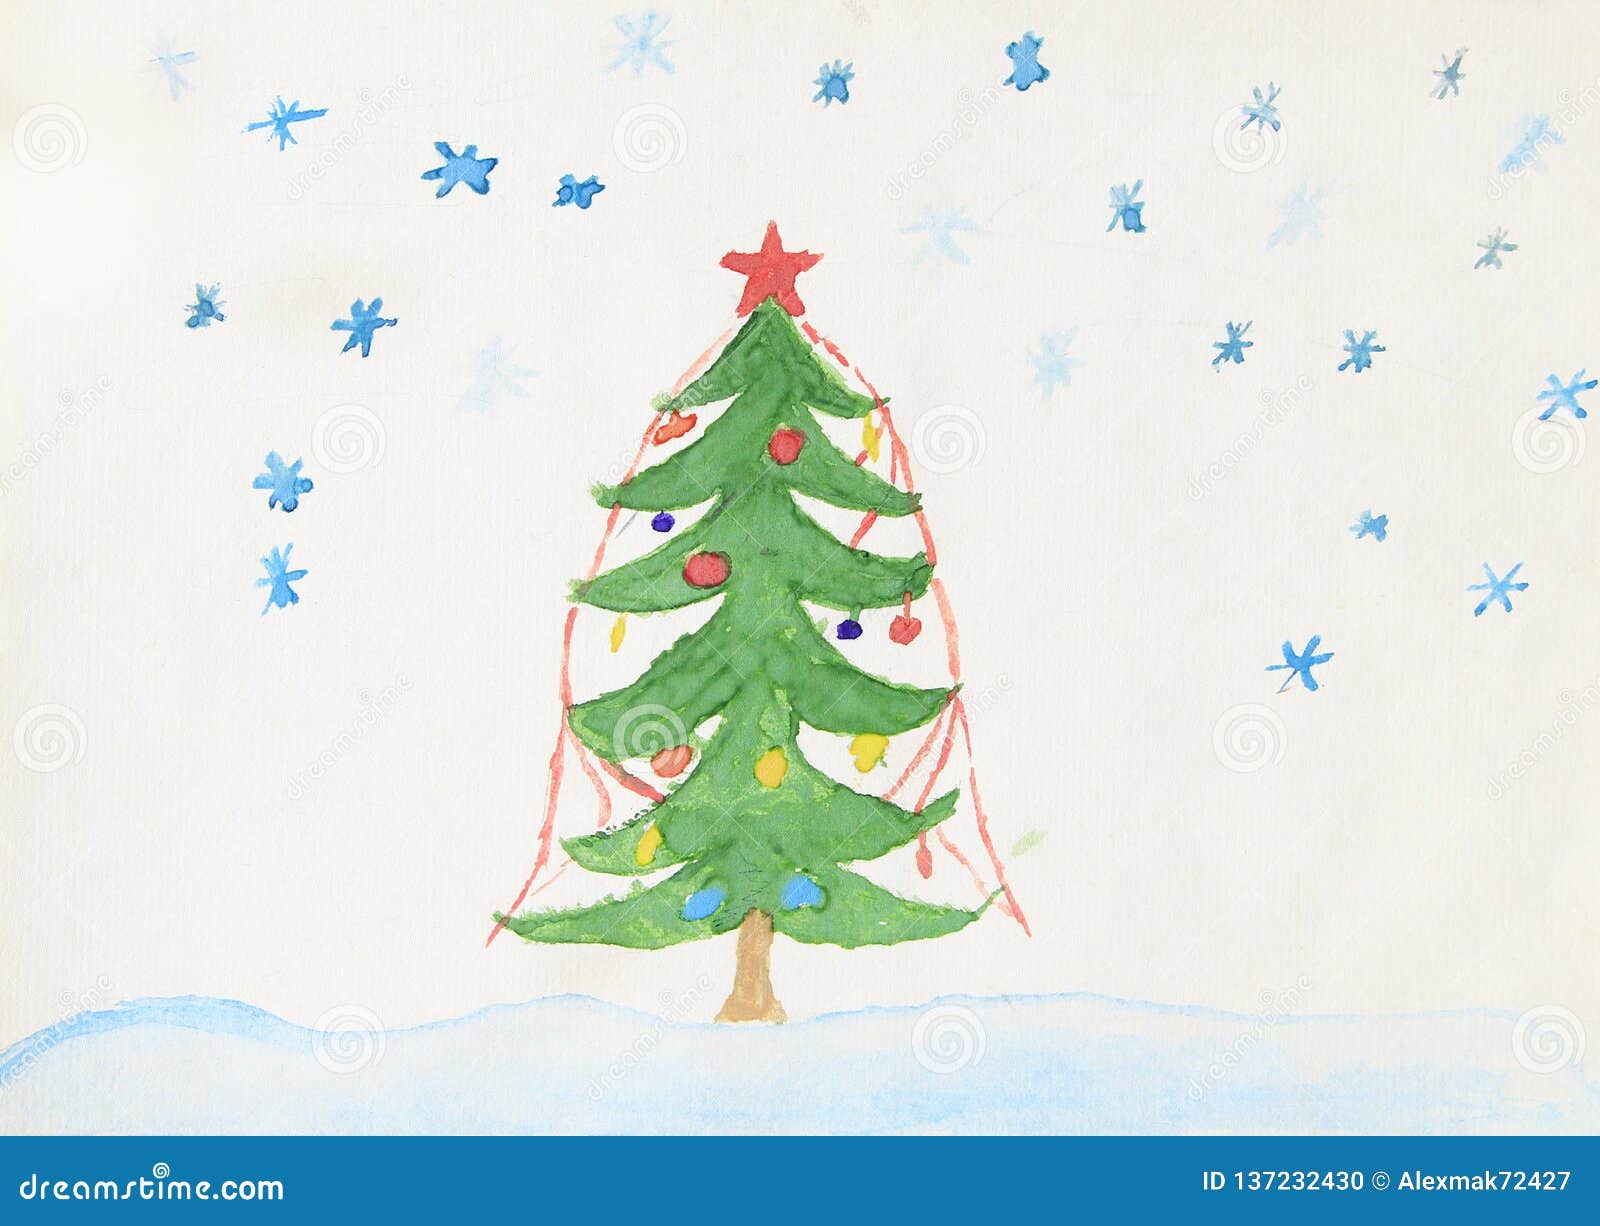 Disegni Di Natale Fatti Da Bambini.Condizione Decorata Di Disegno Dell Albero Di Natale Dei Bambini Nella Neve Illustrazione Di Stock Illustrazione Di Fantasia Nave 137232430